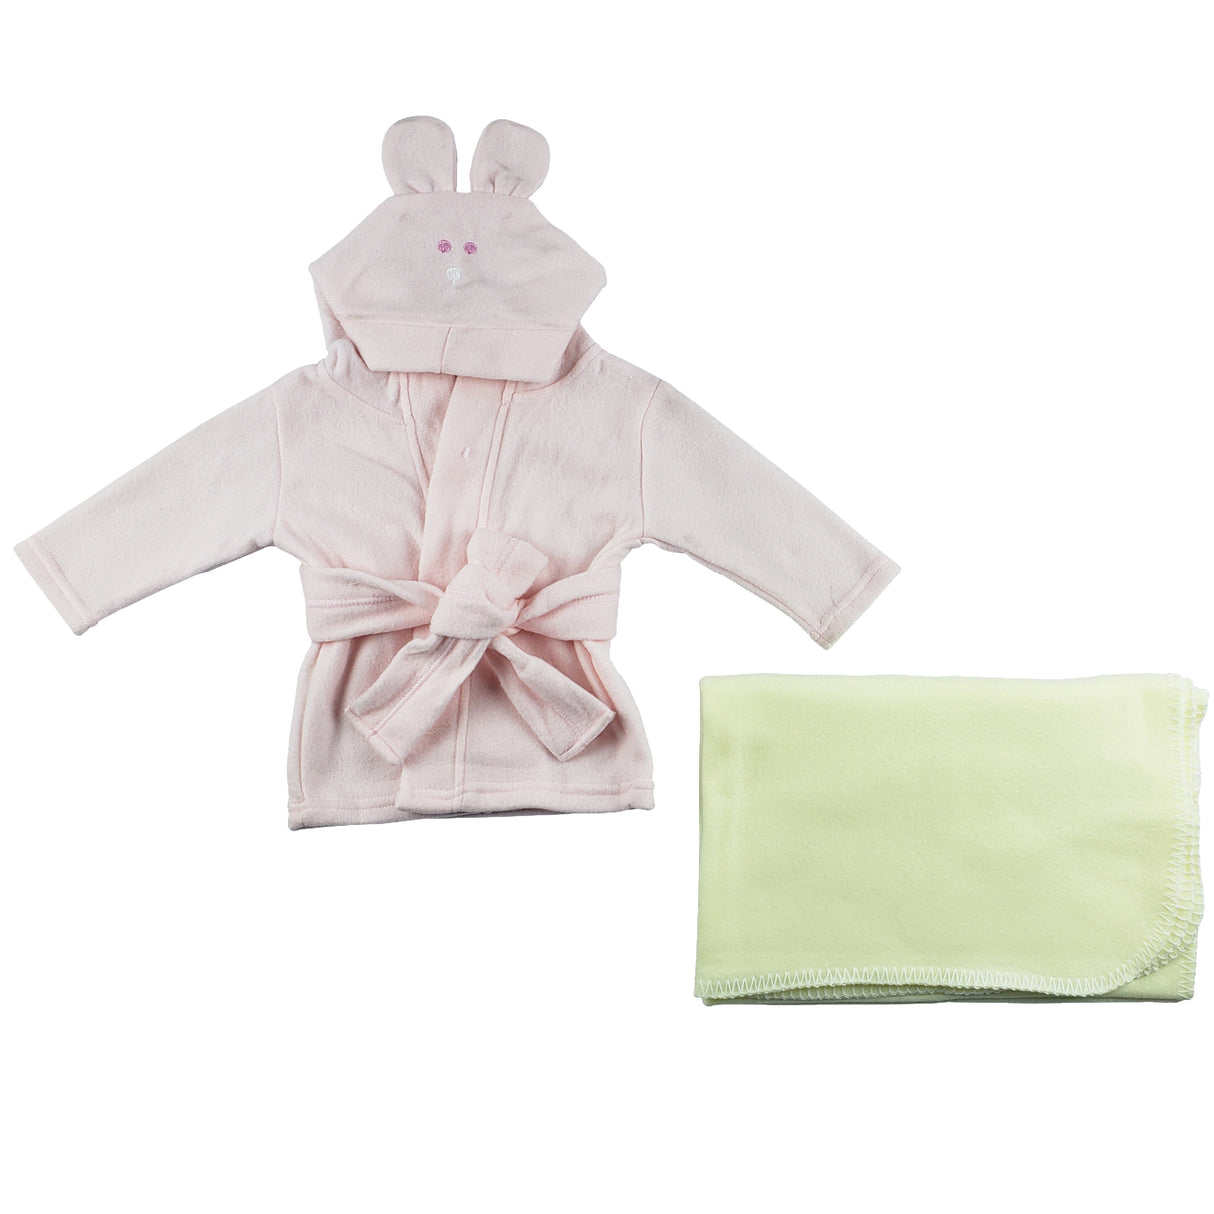 Fleece Robe and Blanket - 2 pc Set